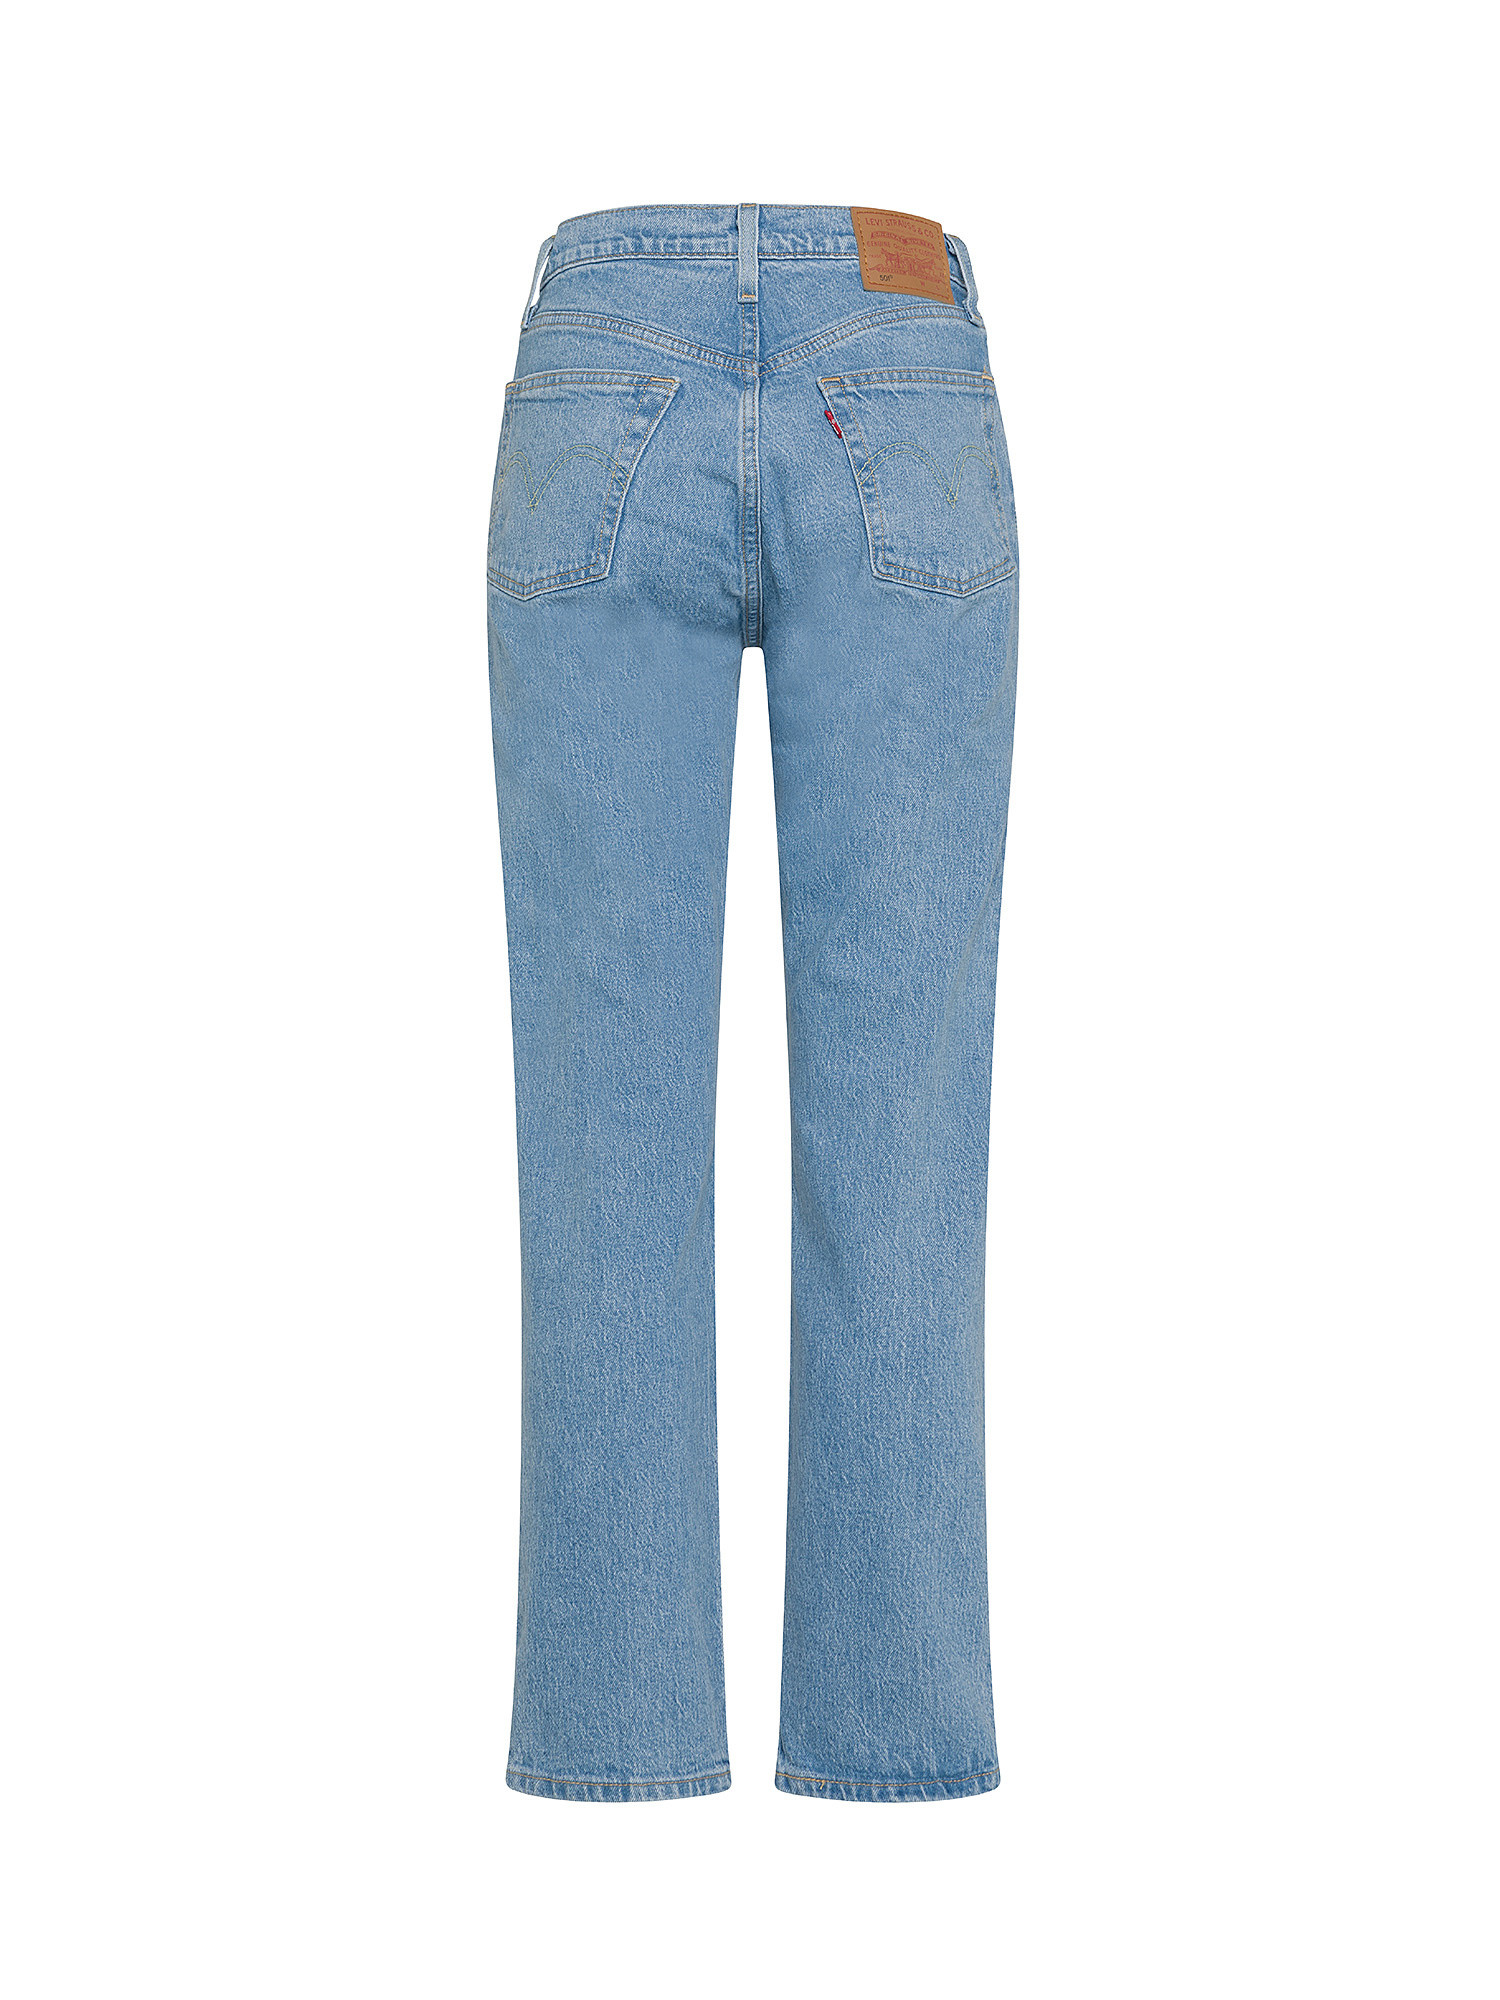 Levi's - jeans 501® original, Denim, large image number 1